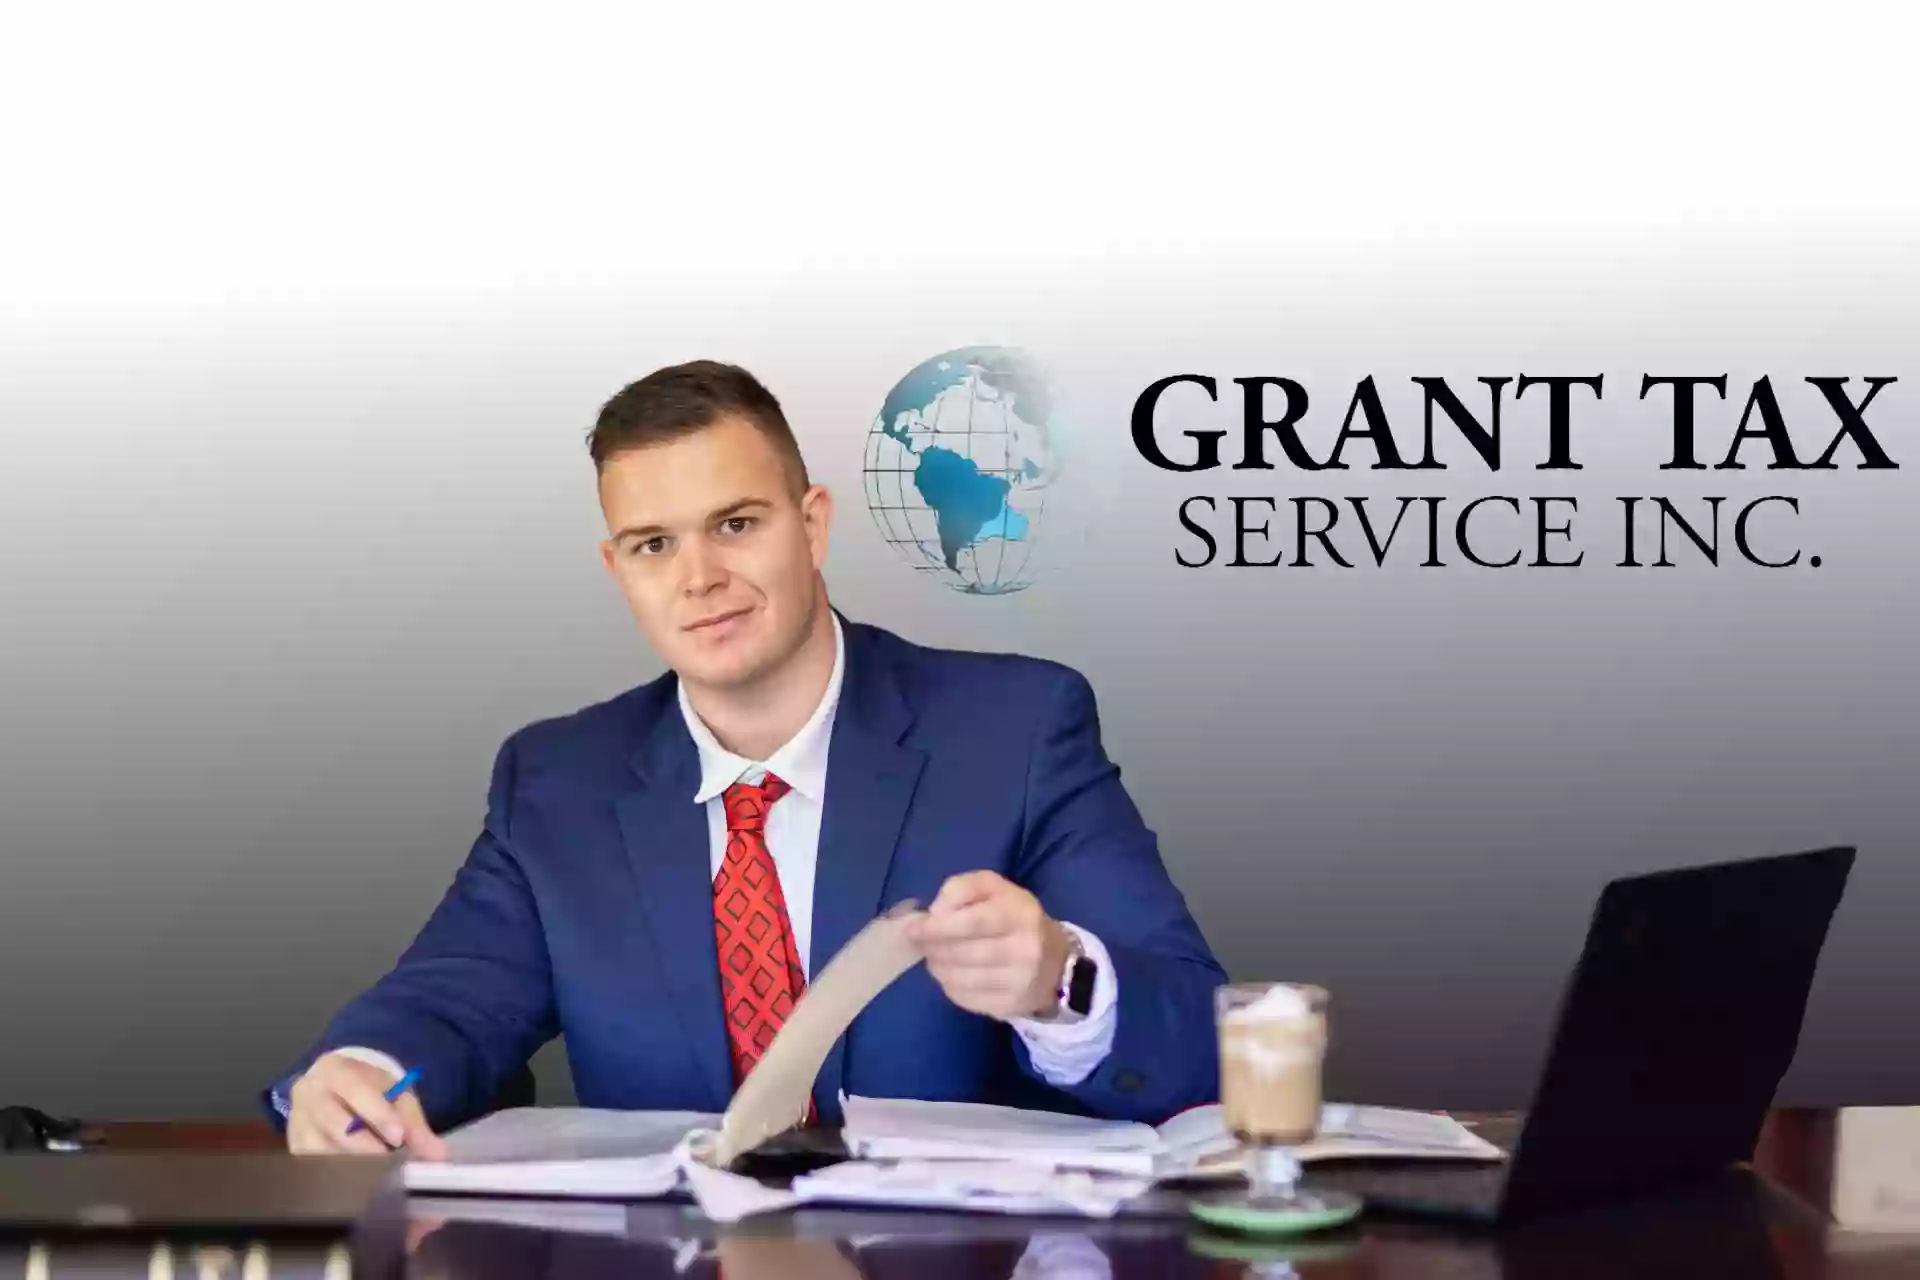 Grant Tax Service Inc